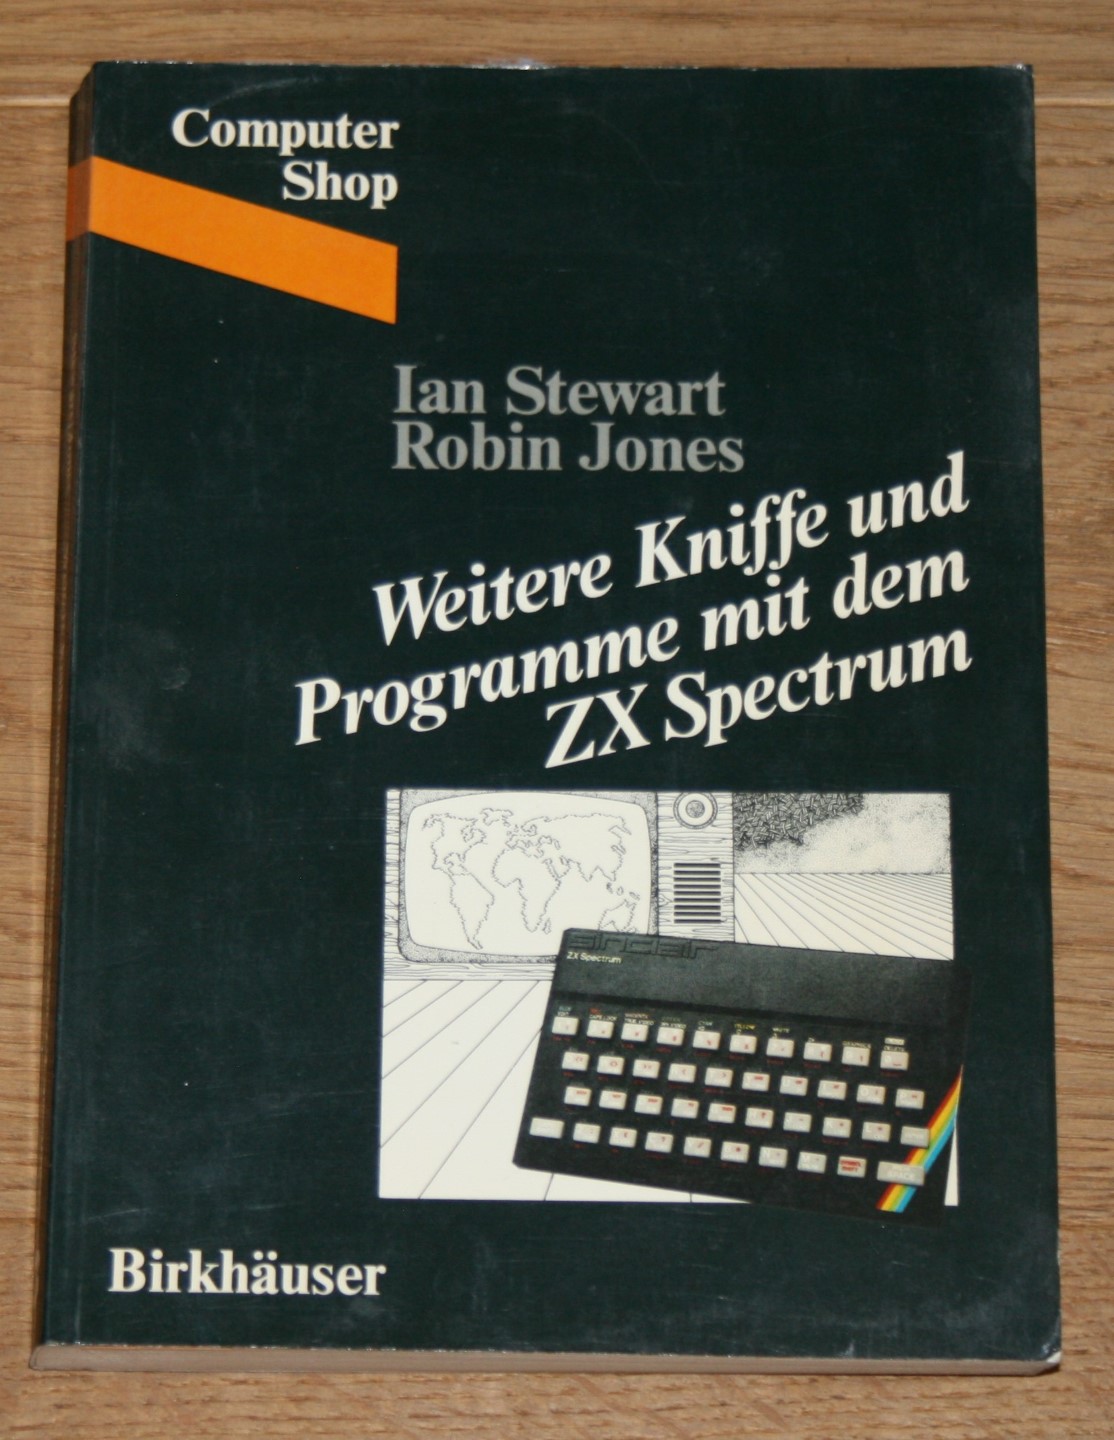 Weitere Kniffe und Programme mit dem ZX Spectrum. - Jones, Robin und Ian Stewart